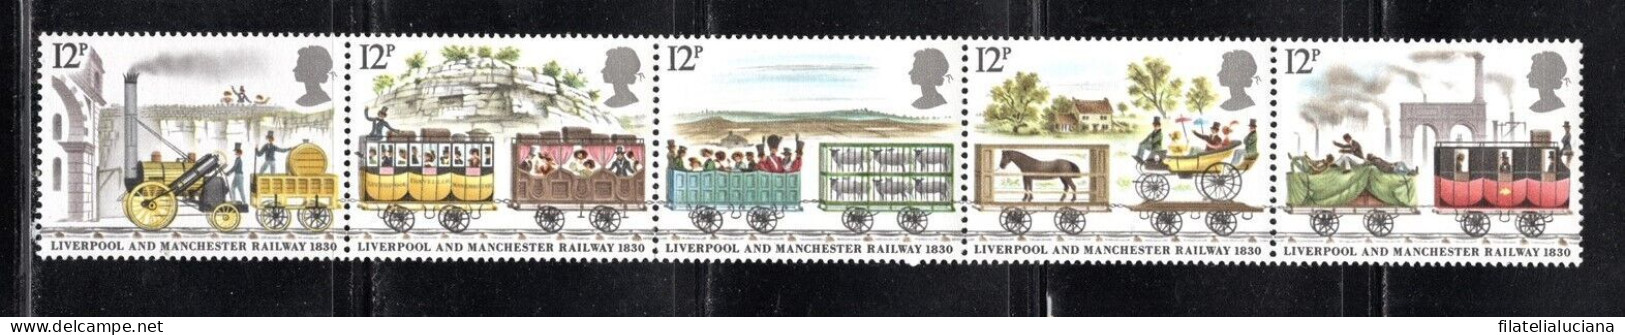 Great Britain Stamp Scott #904-908 (SG1113-1117), Railway, Strip Of 5, MNH - Tram